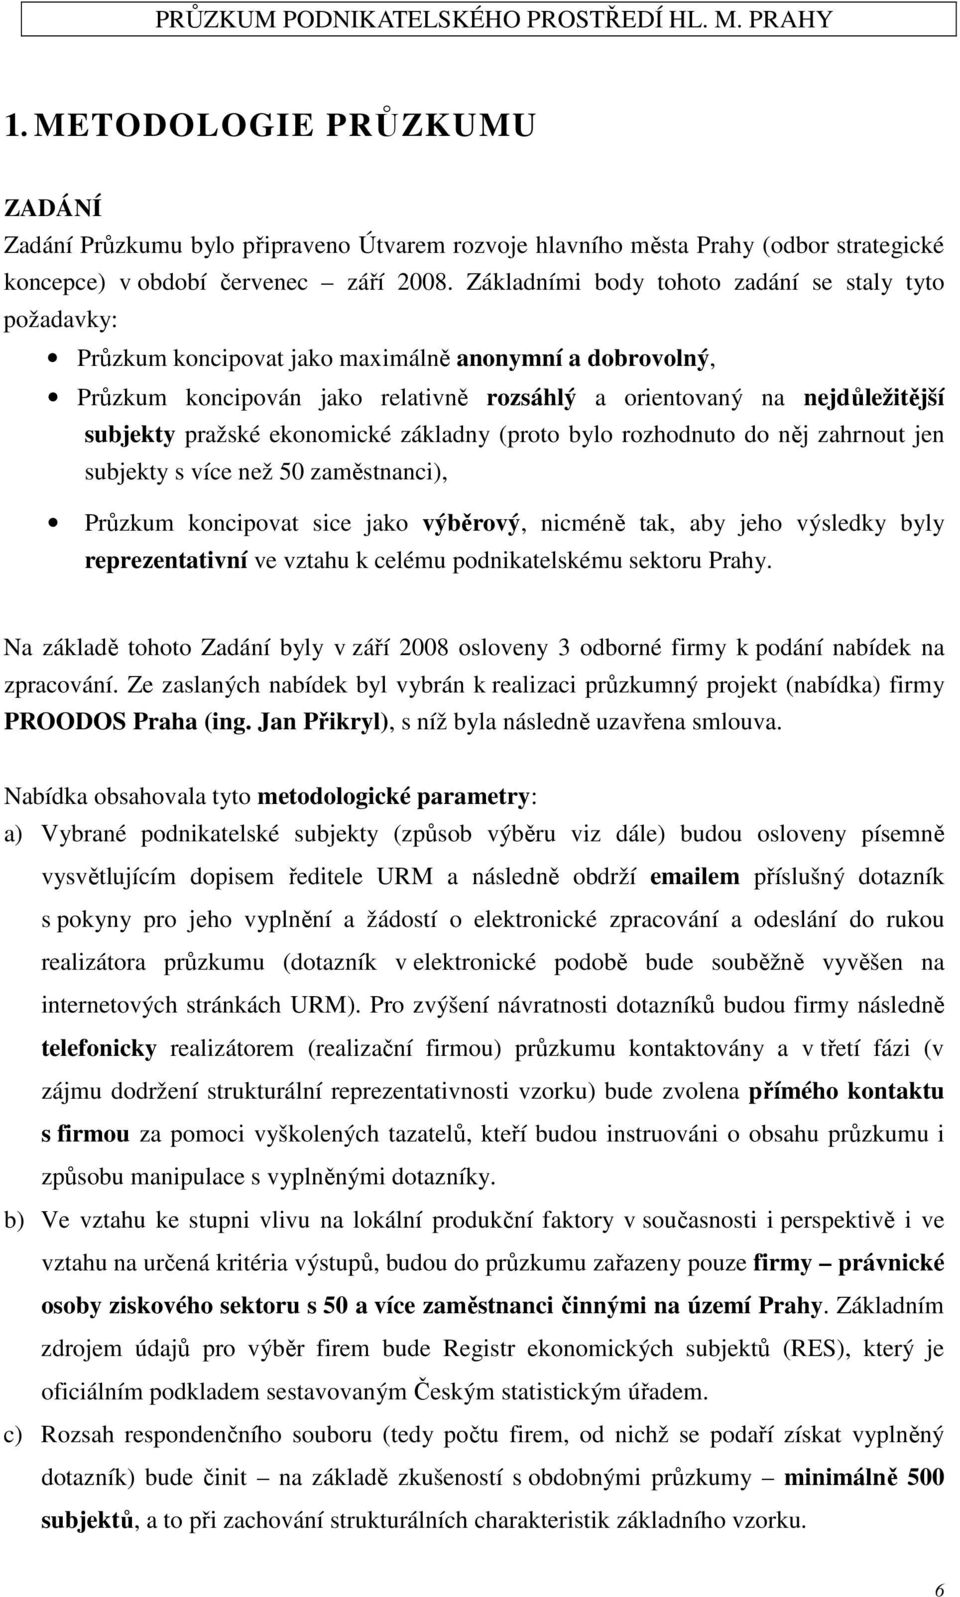 pražské ekonomické základny (proto bylo rozhodnuto do něj zahrnout jen subjekty s více než 50 zaměstnanci), Průzkum koncipovat sice jako výběrový, nicméně tak, aby jeho výsledky byly reprezentativní